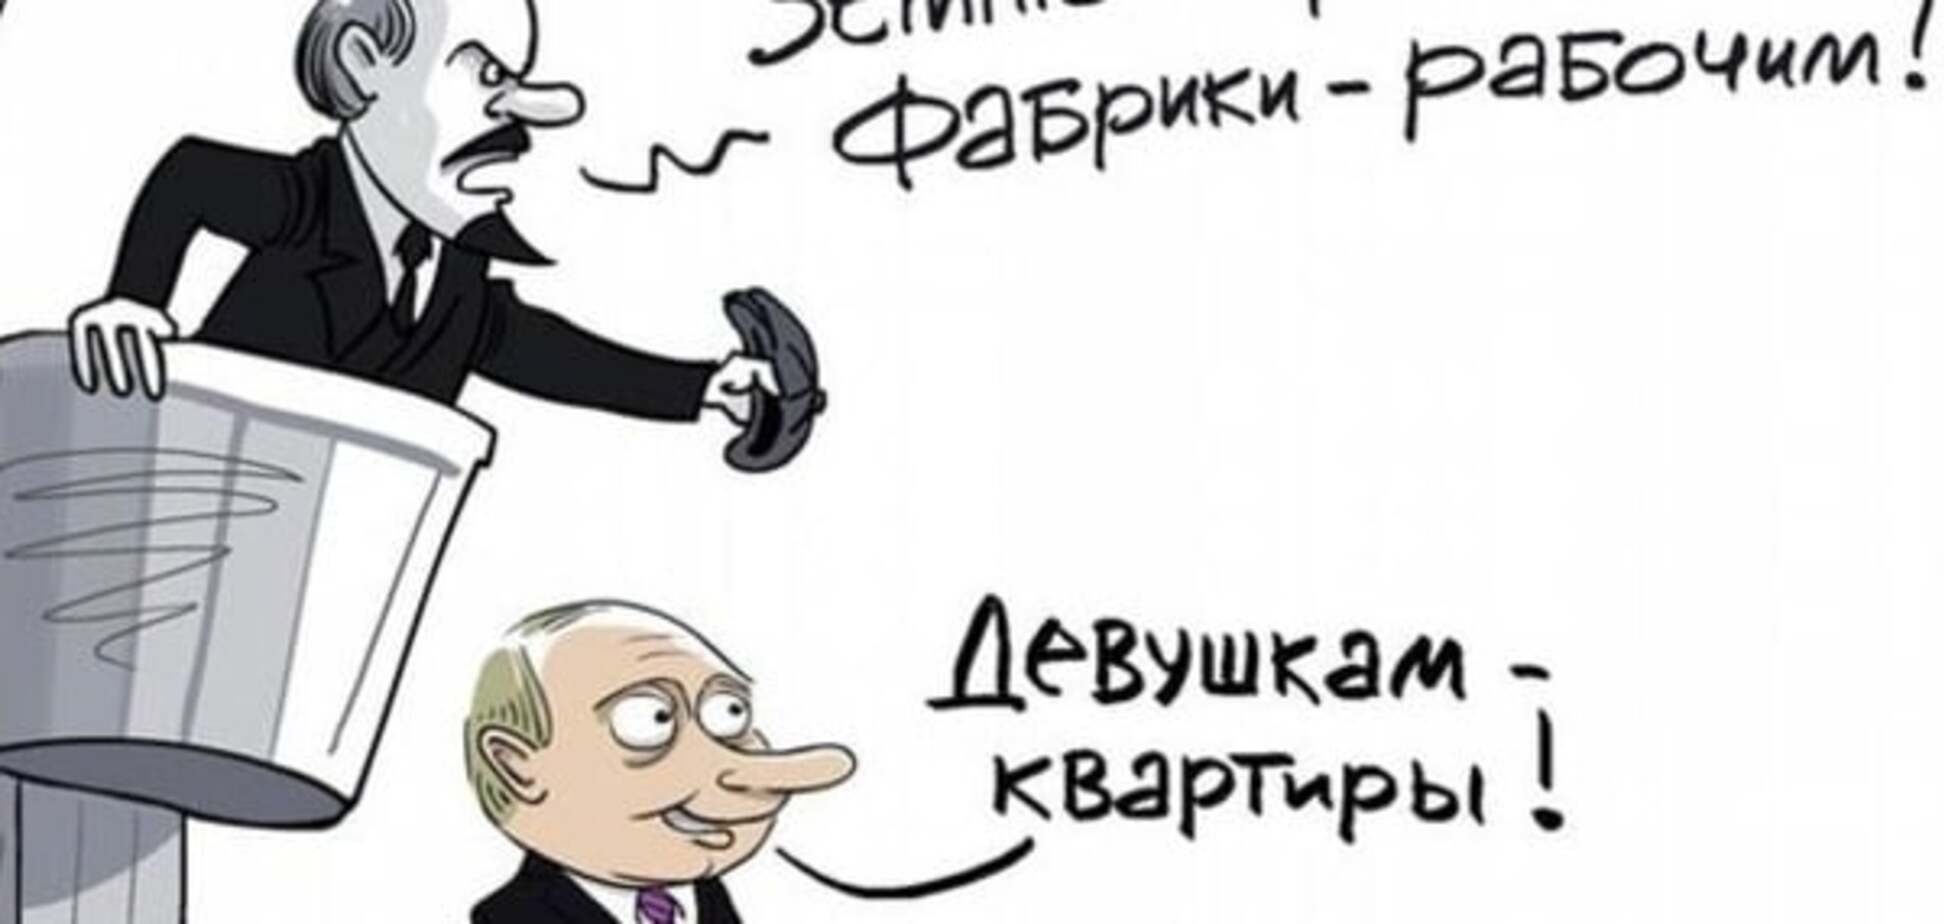 'Дівчатам - квартири': карикатурист показав, як Путін переплюнув Леніна